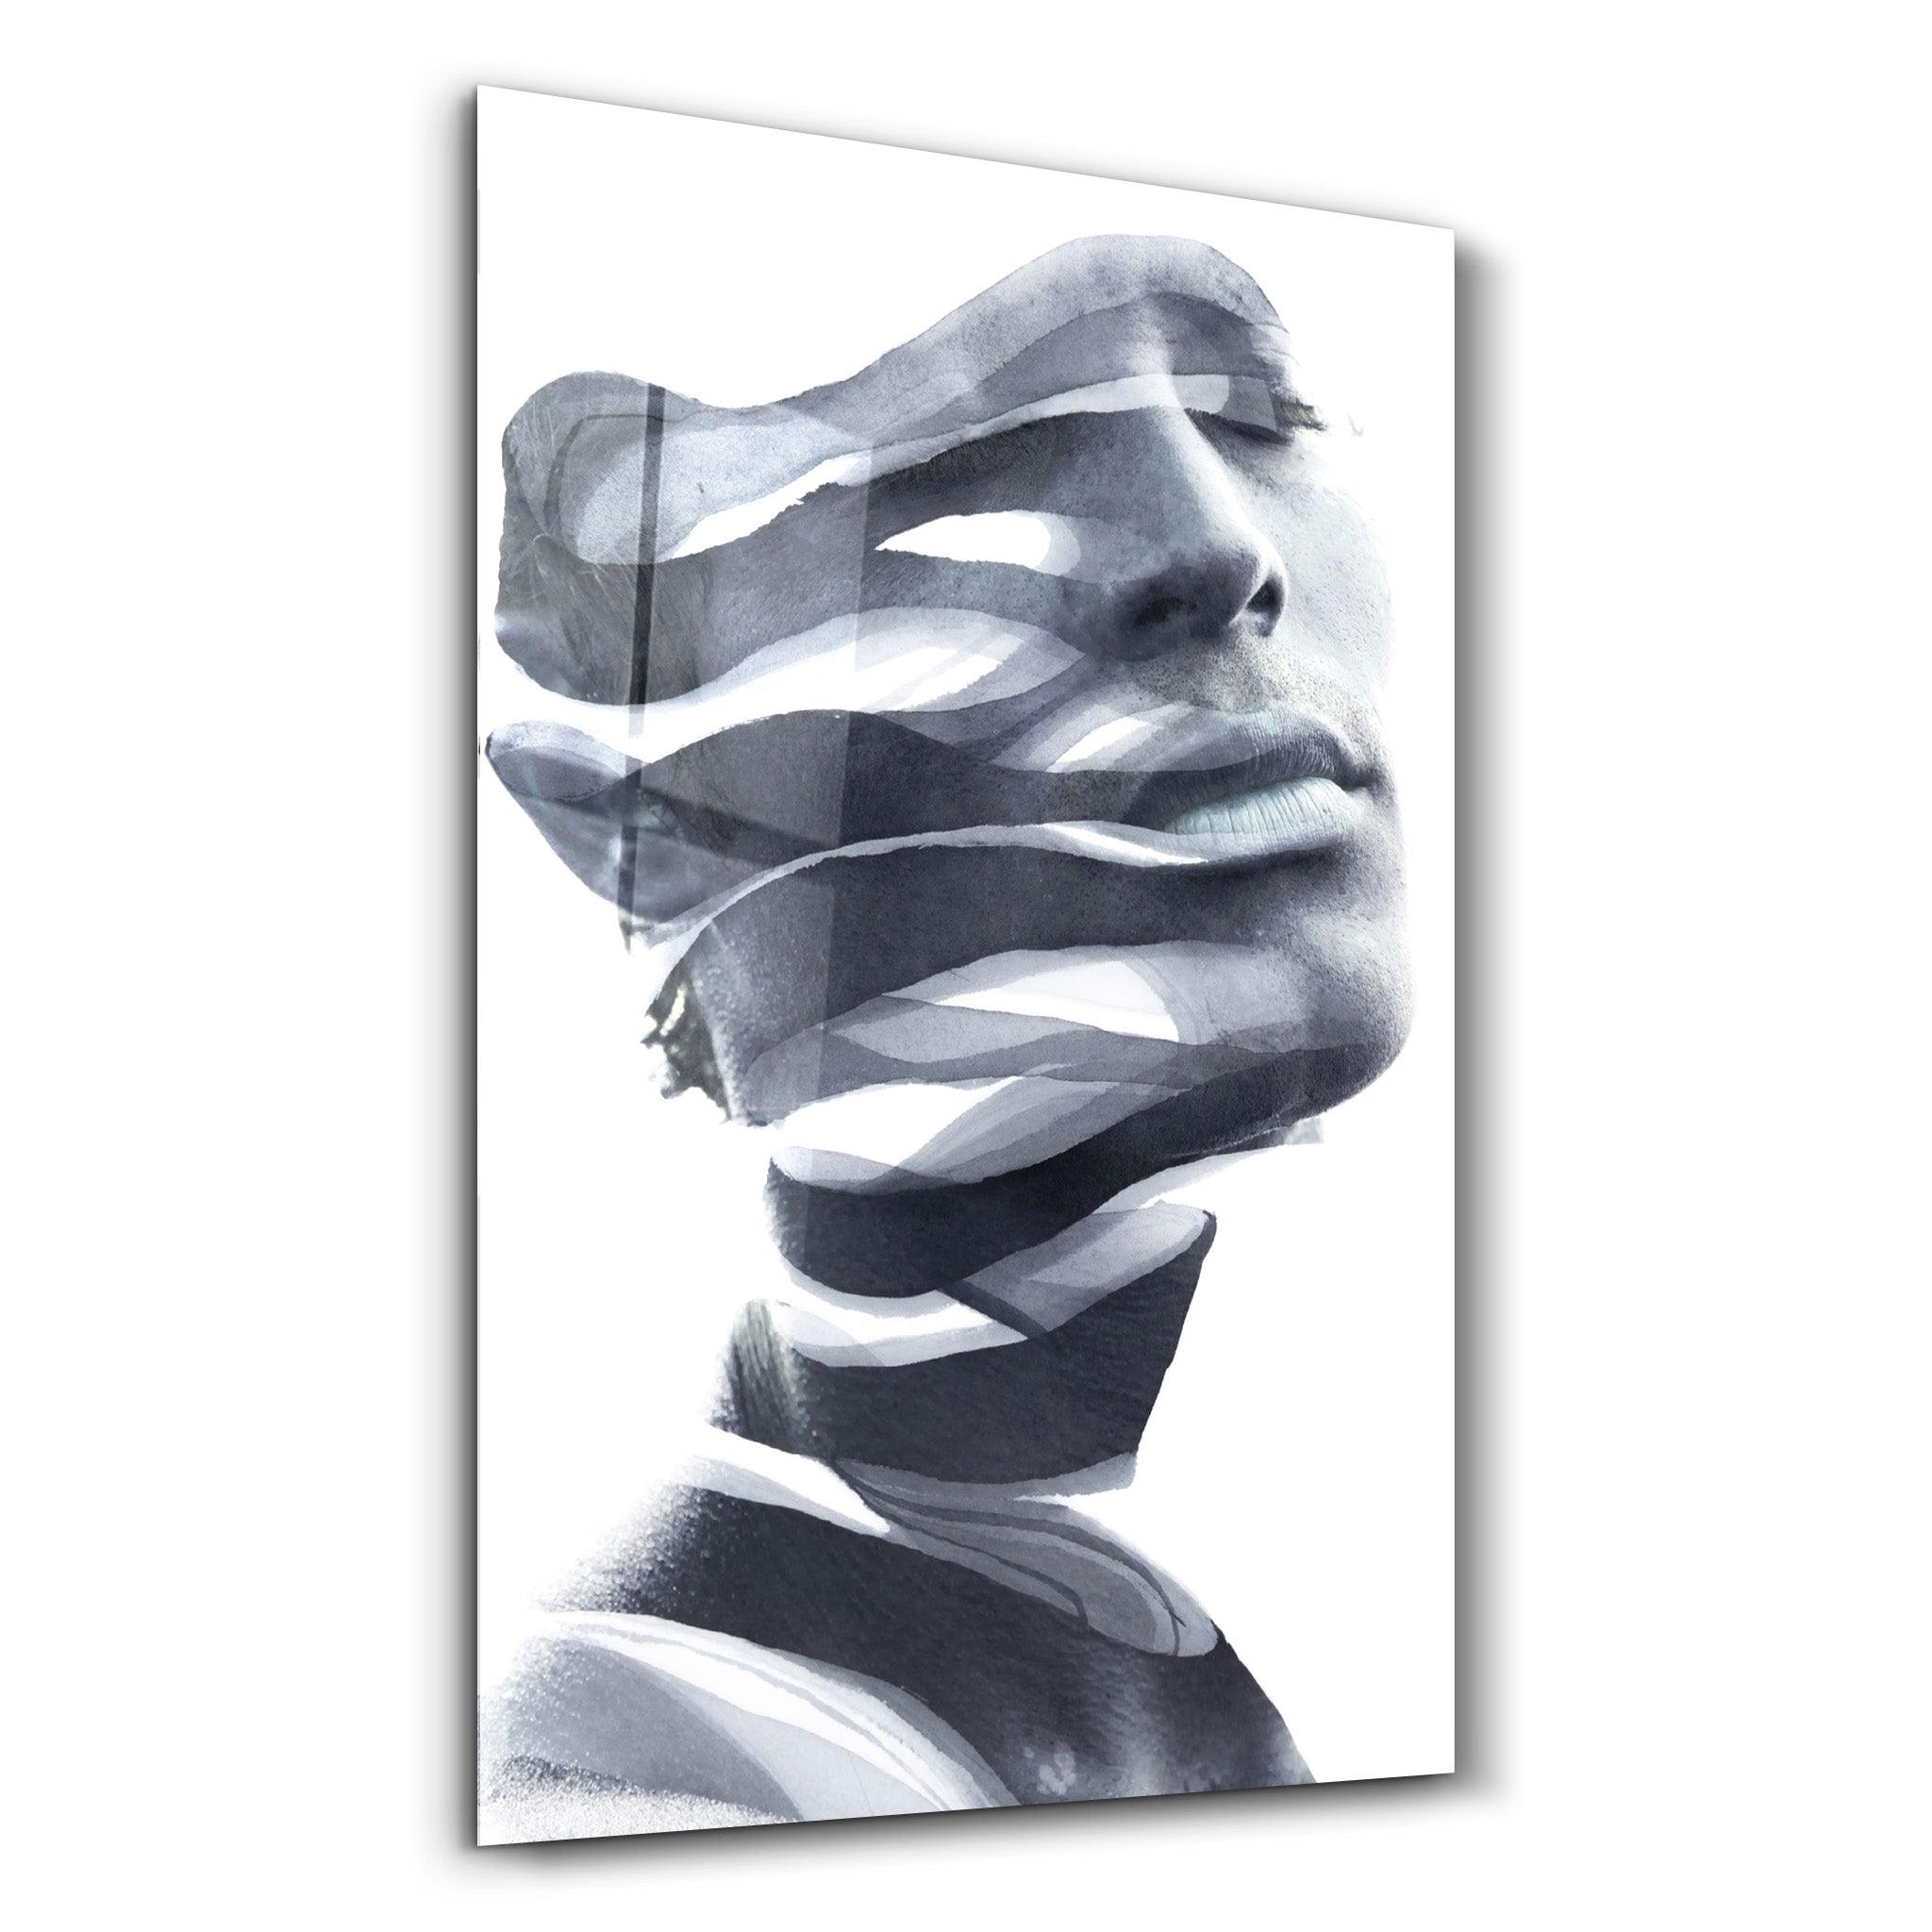 Bandage | Glass Wall Art - ArtDesigna Glass Printing Wall Art